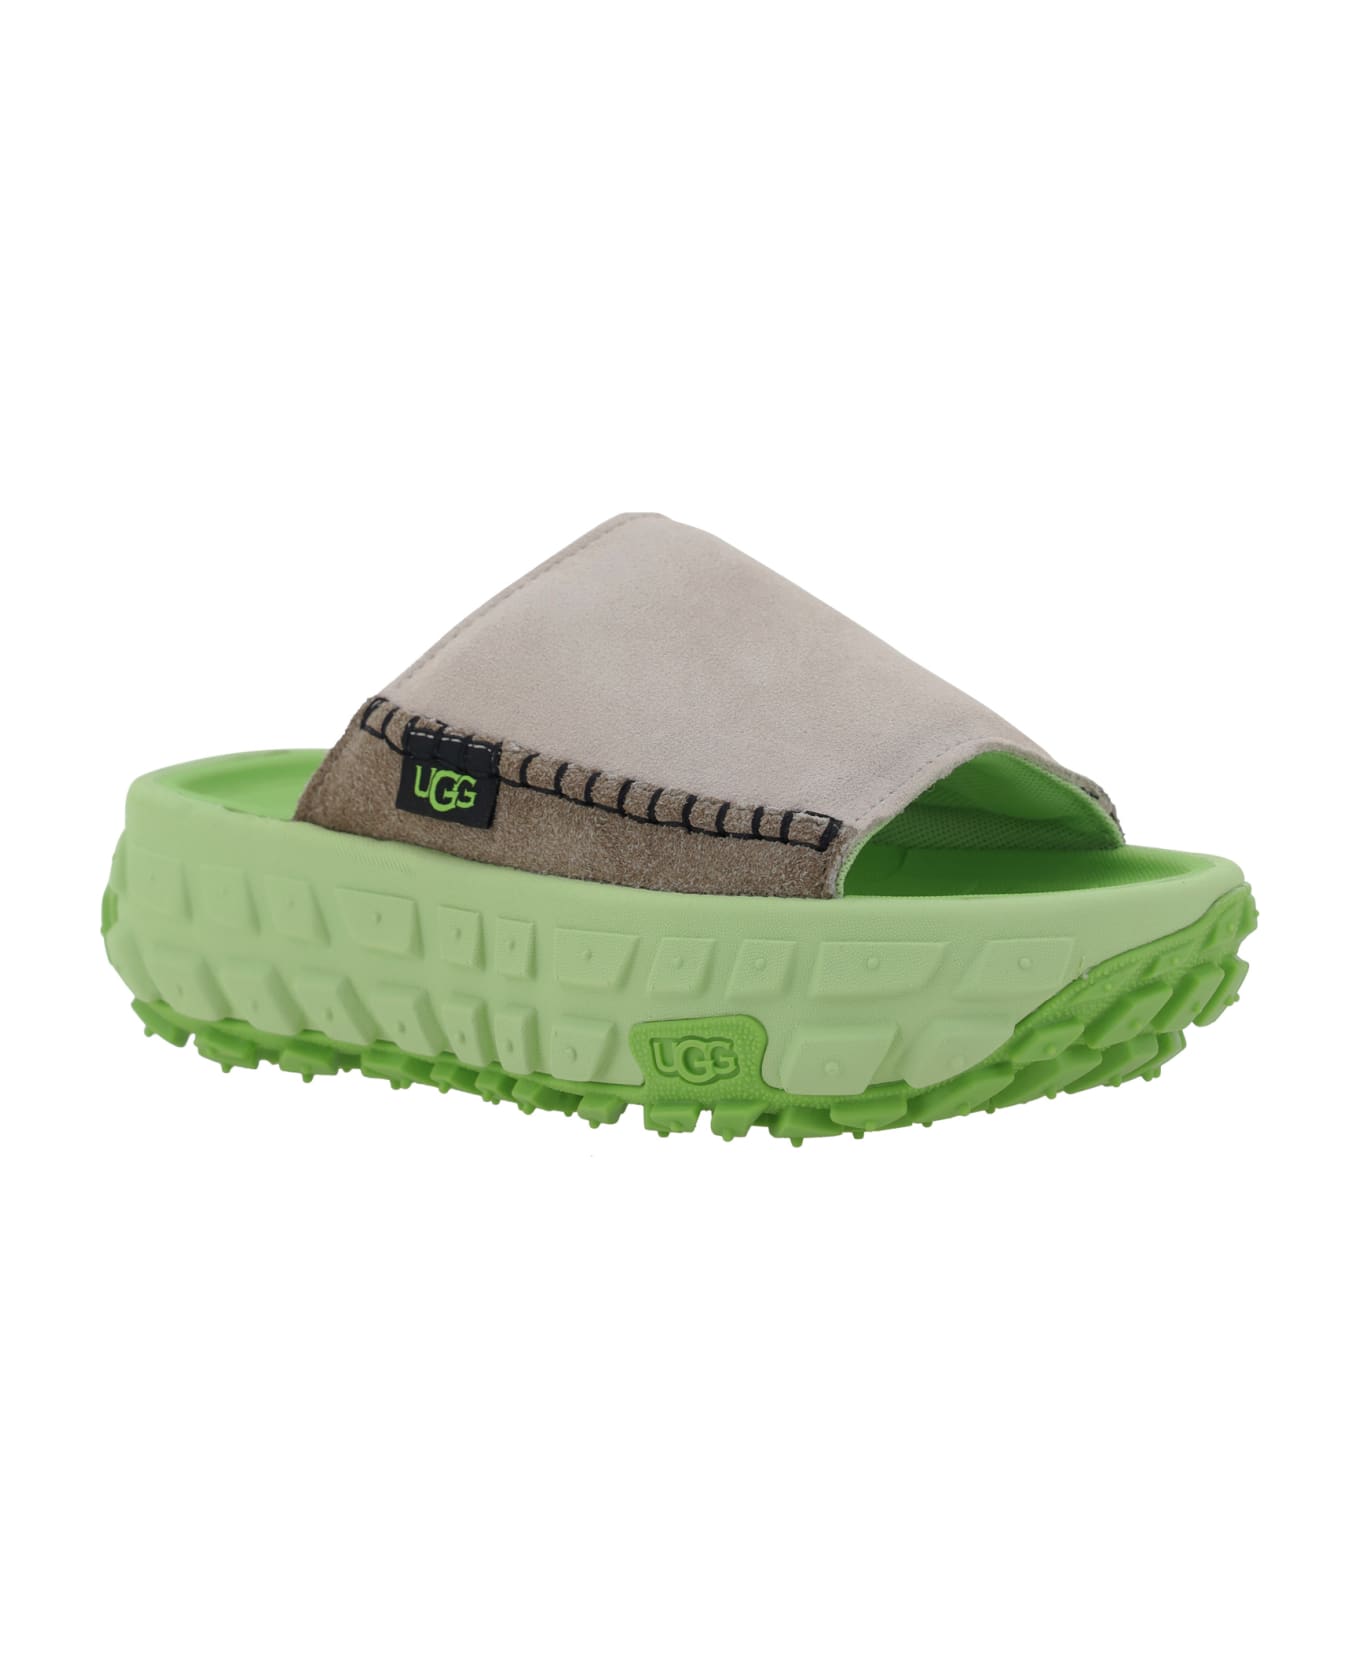 UGG Venture Daze Sandals - Natural